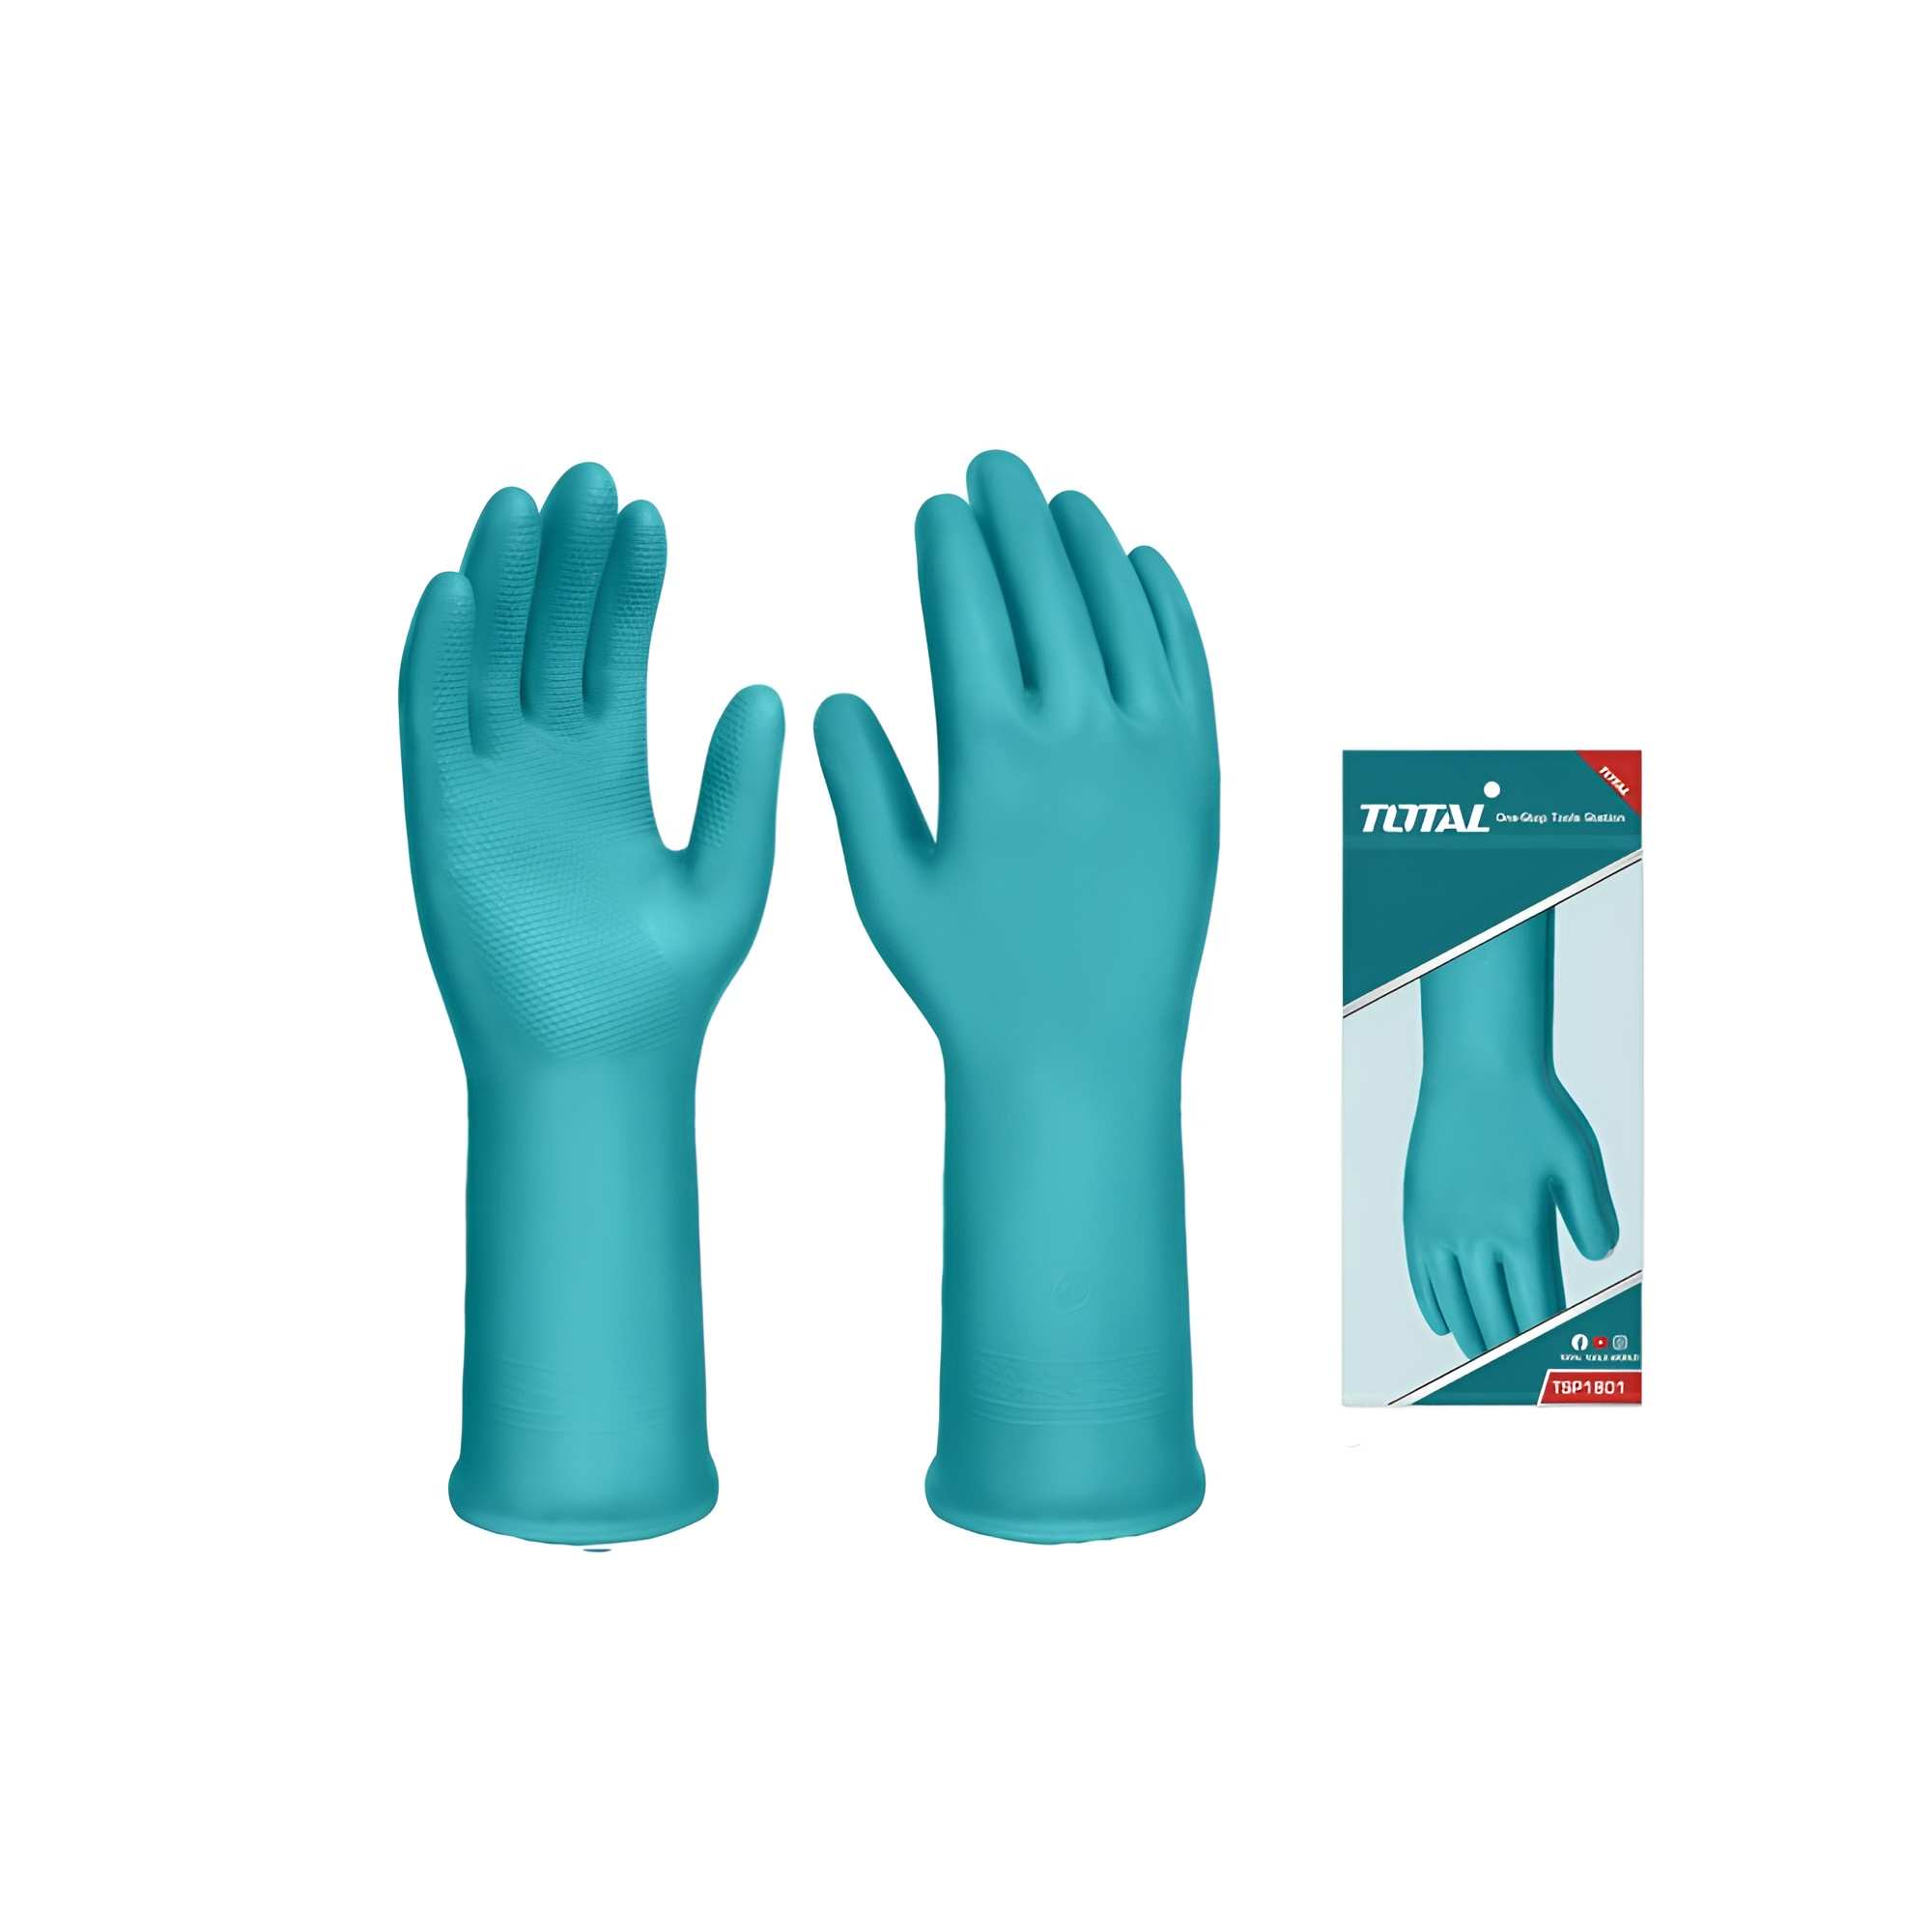 Hình ảnh 1 của mặt hàng Găng tay nhựa PVC cỡ L Total TSP1801